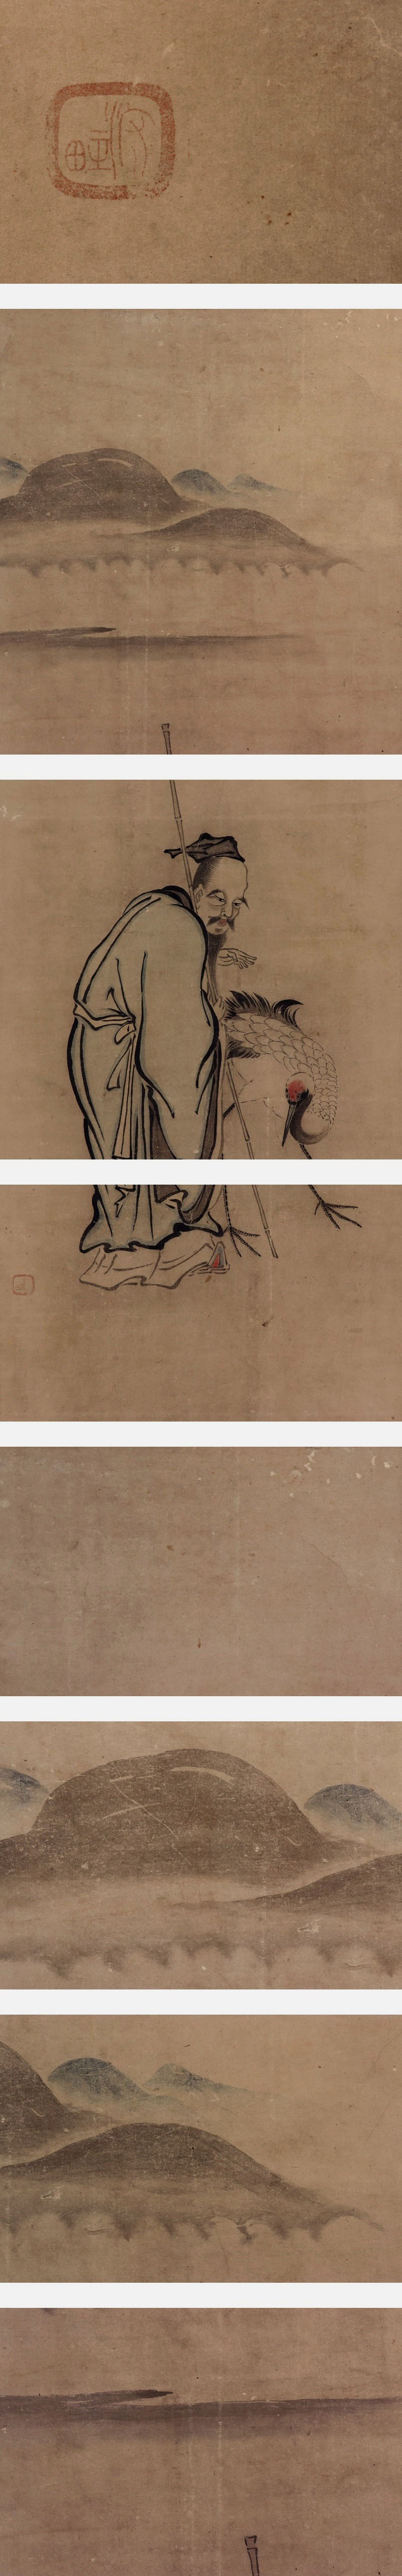 東京古画◆紙本◆合箱◆掛軸 v12082 人物、菩薩